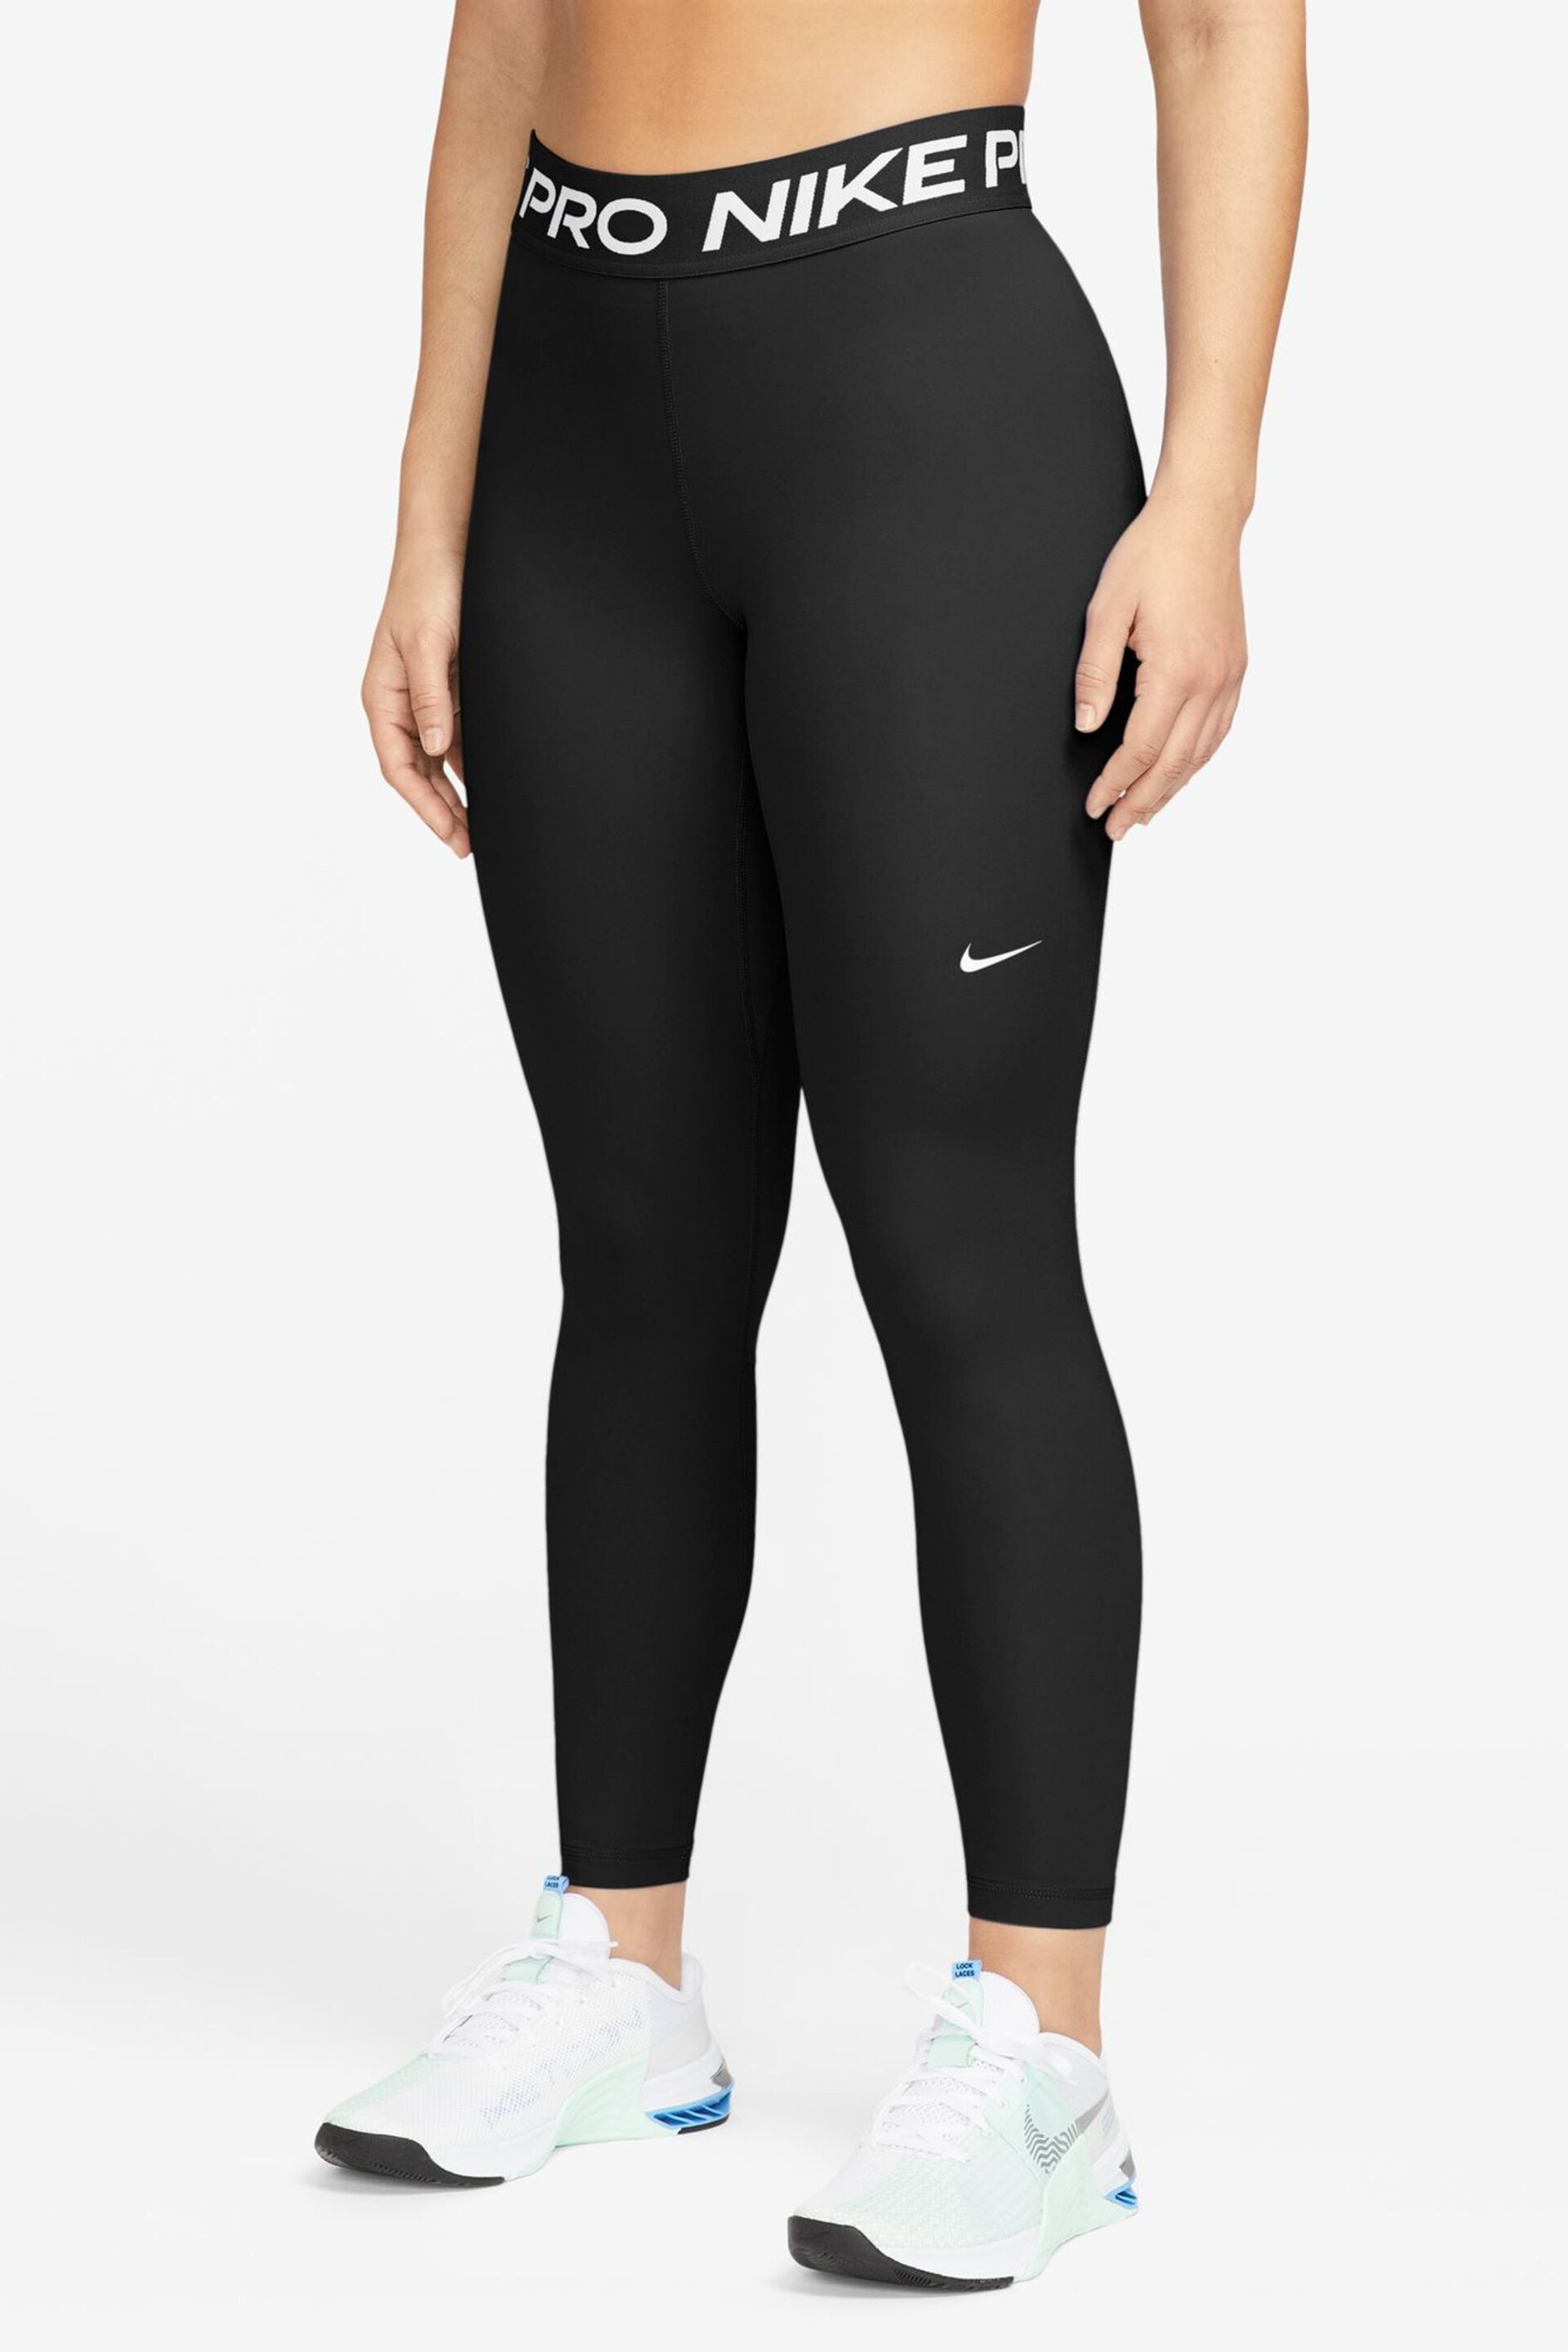 Nike Black Dri-FIT Pro 365 Mid Rise 7/8 Leggings - Image 1 of 7